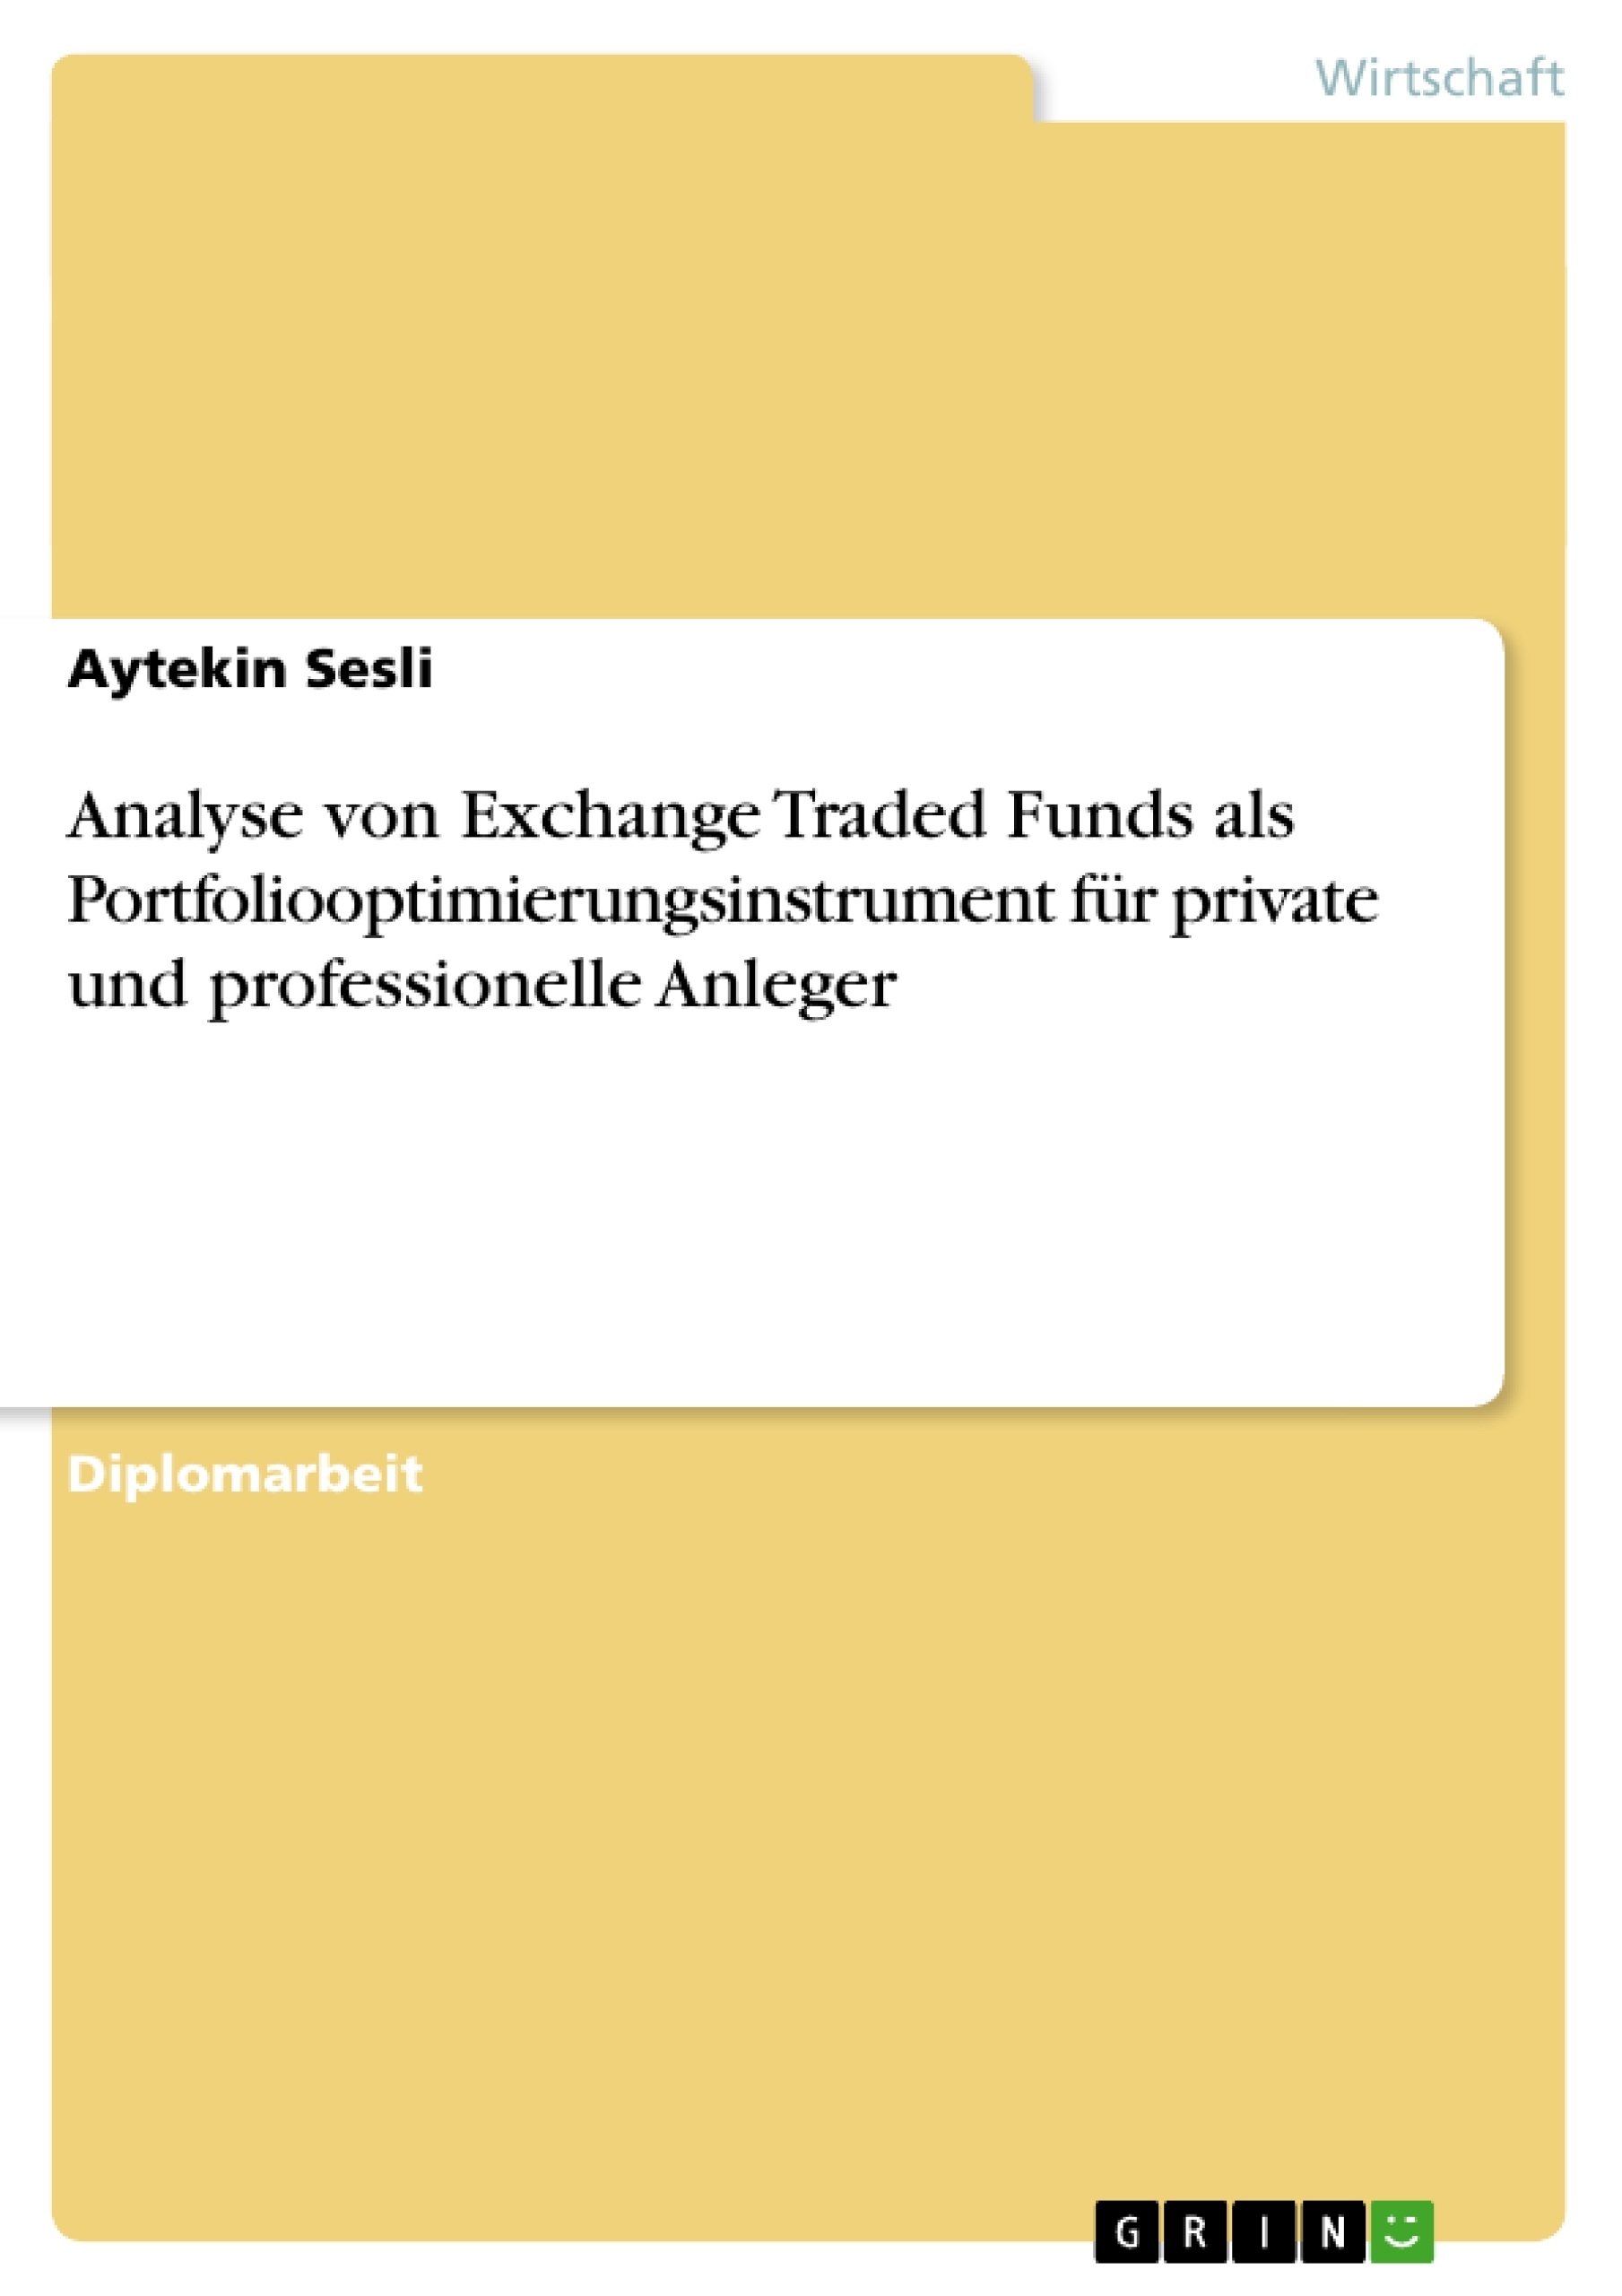 Title: Analyse von Exchange Traded Funds als Portfoliooptimierungsinstrument für private und professionelle Anleger